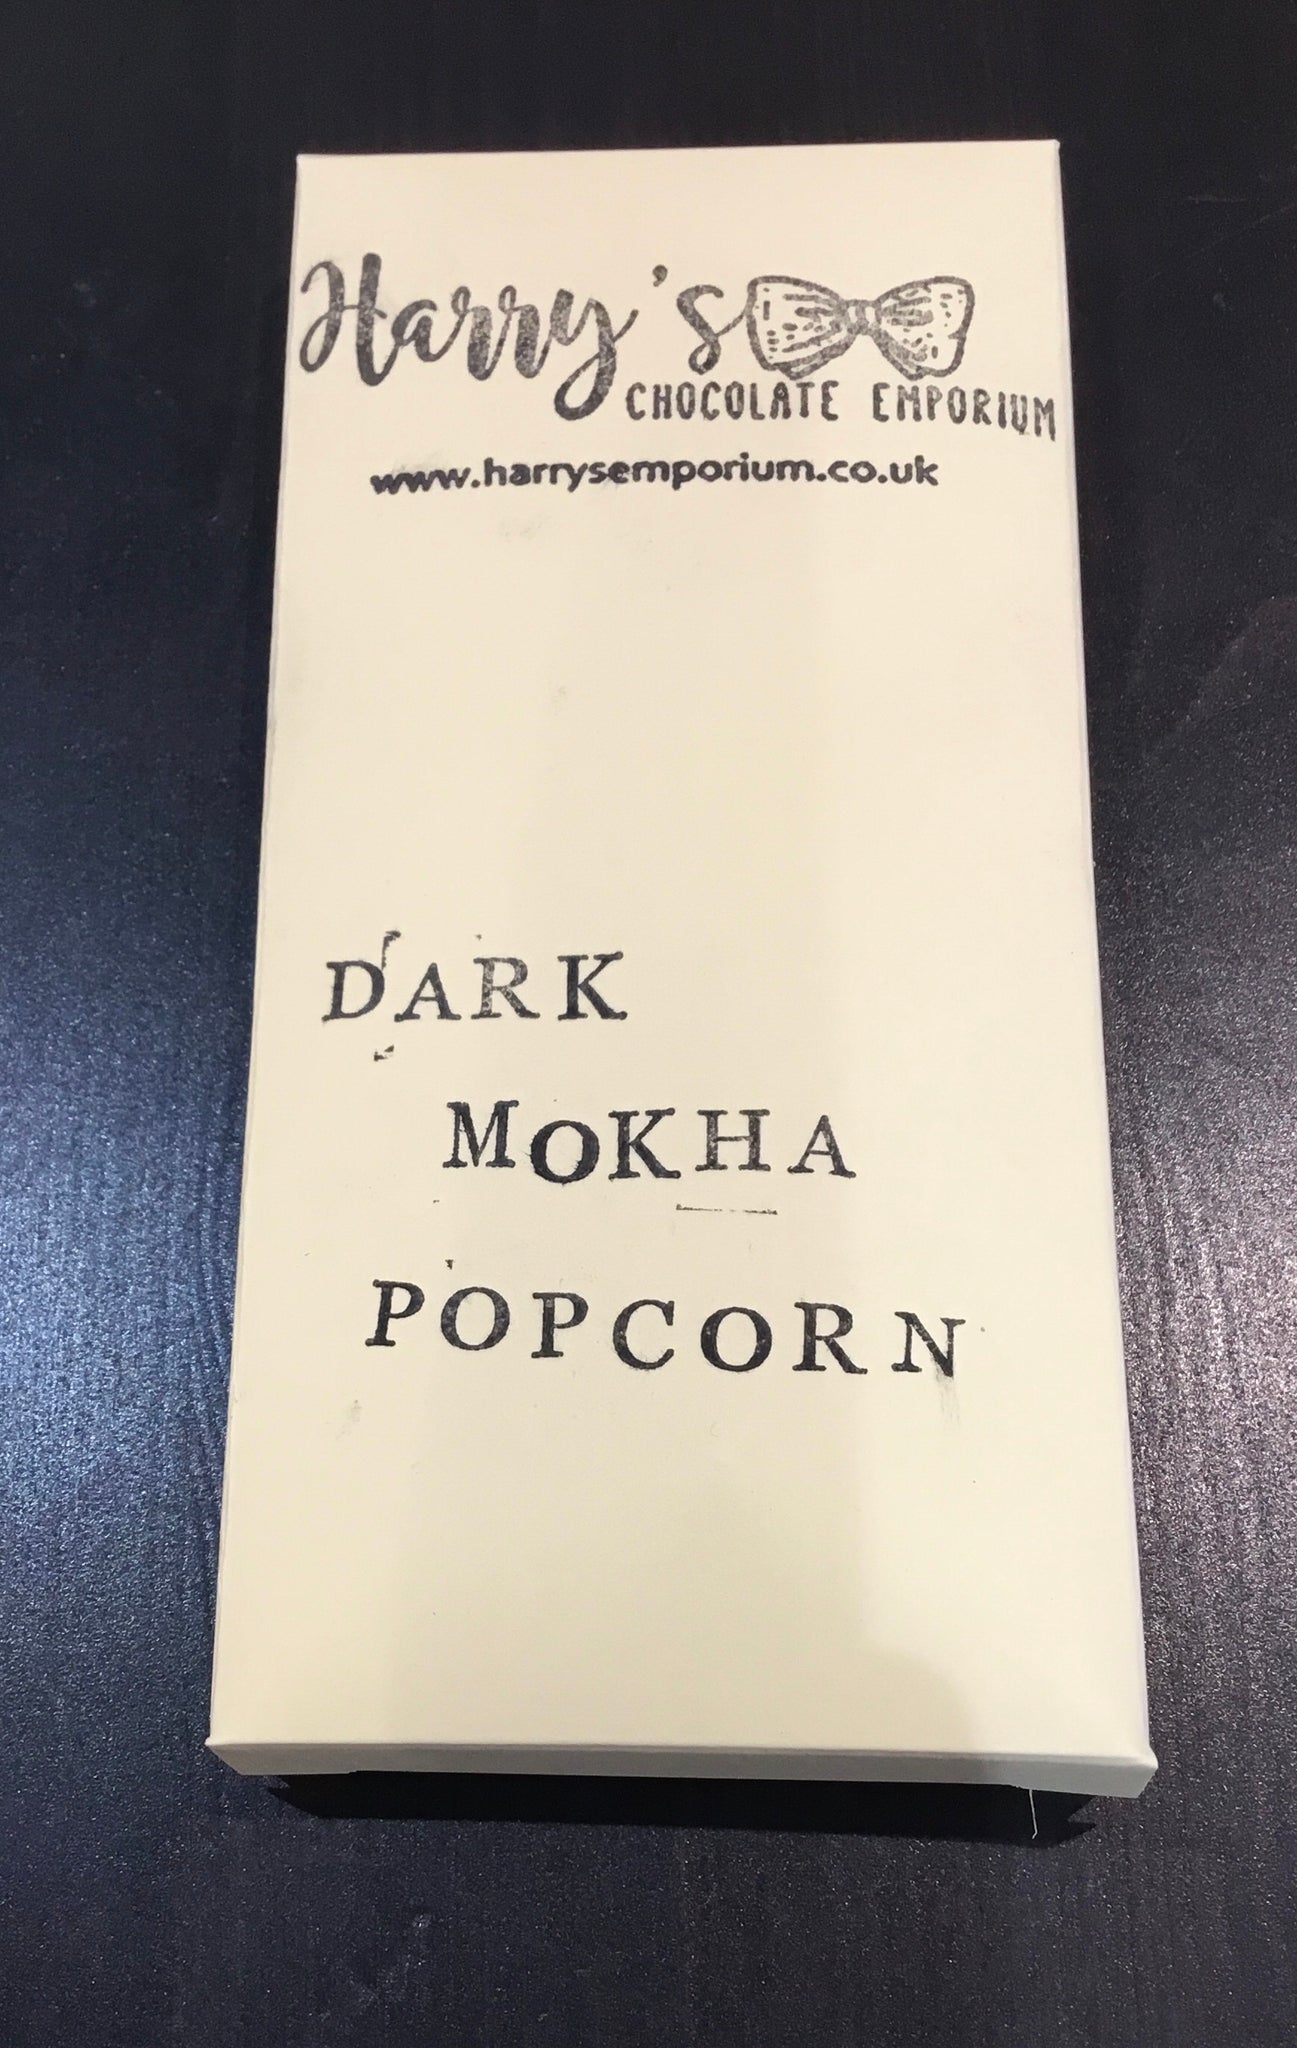 Dark Mocha Popcorn